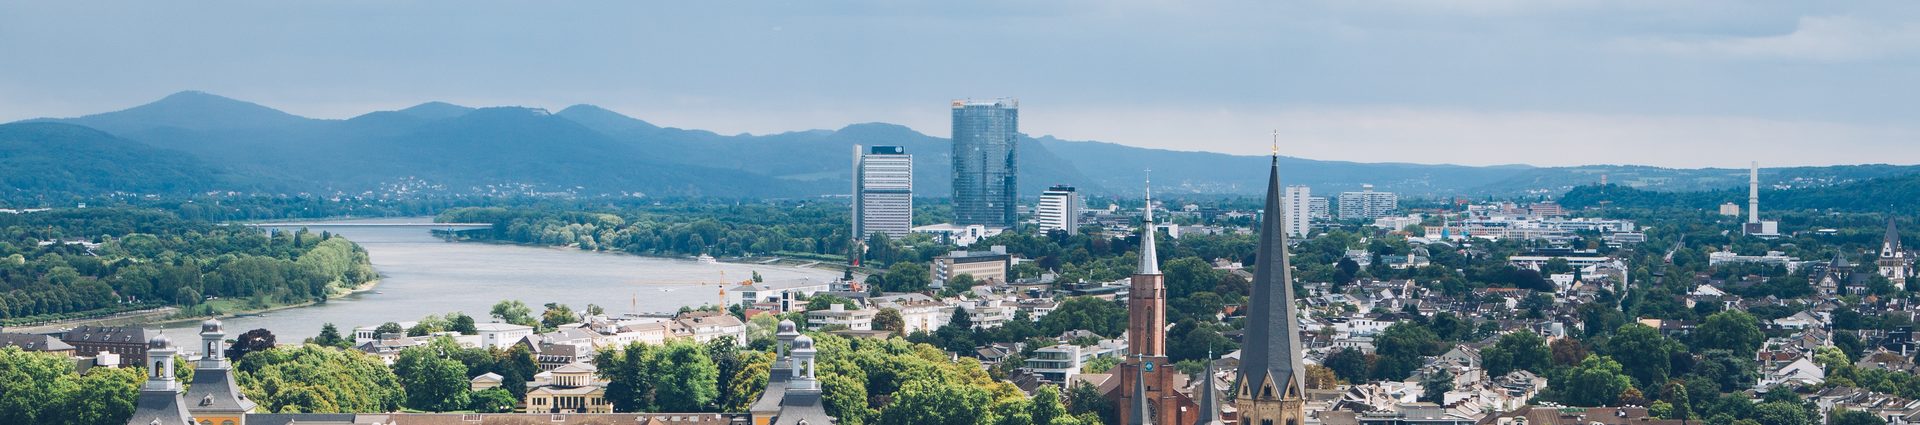 Blick auf die Bonner Innenstadt mit Münster, Universität, Rhein, UN-Campus und Siebengebirge.